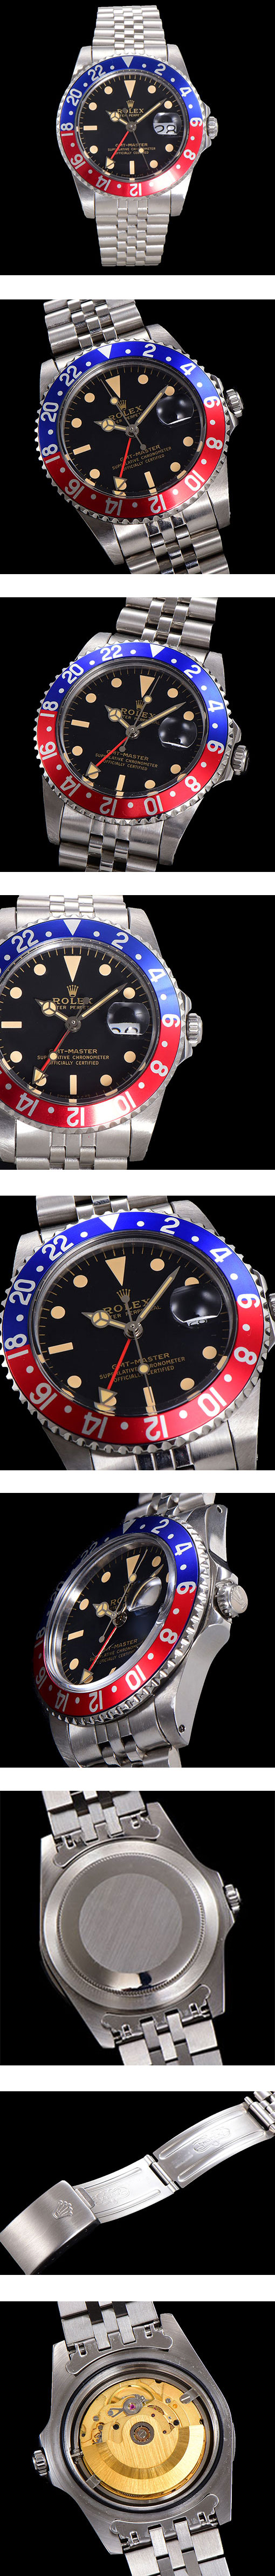 ロレックス 人気スーパーコピー時計 GMTマスター ミラー 1675 ブラック メンズ 腕時計